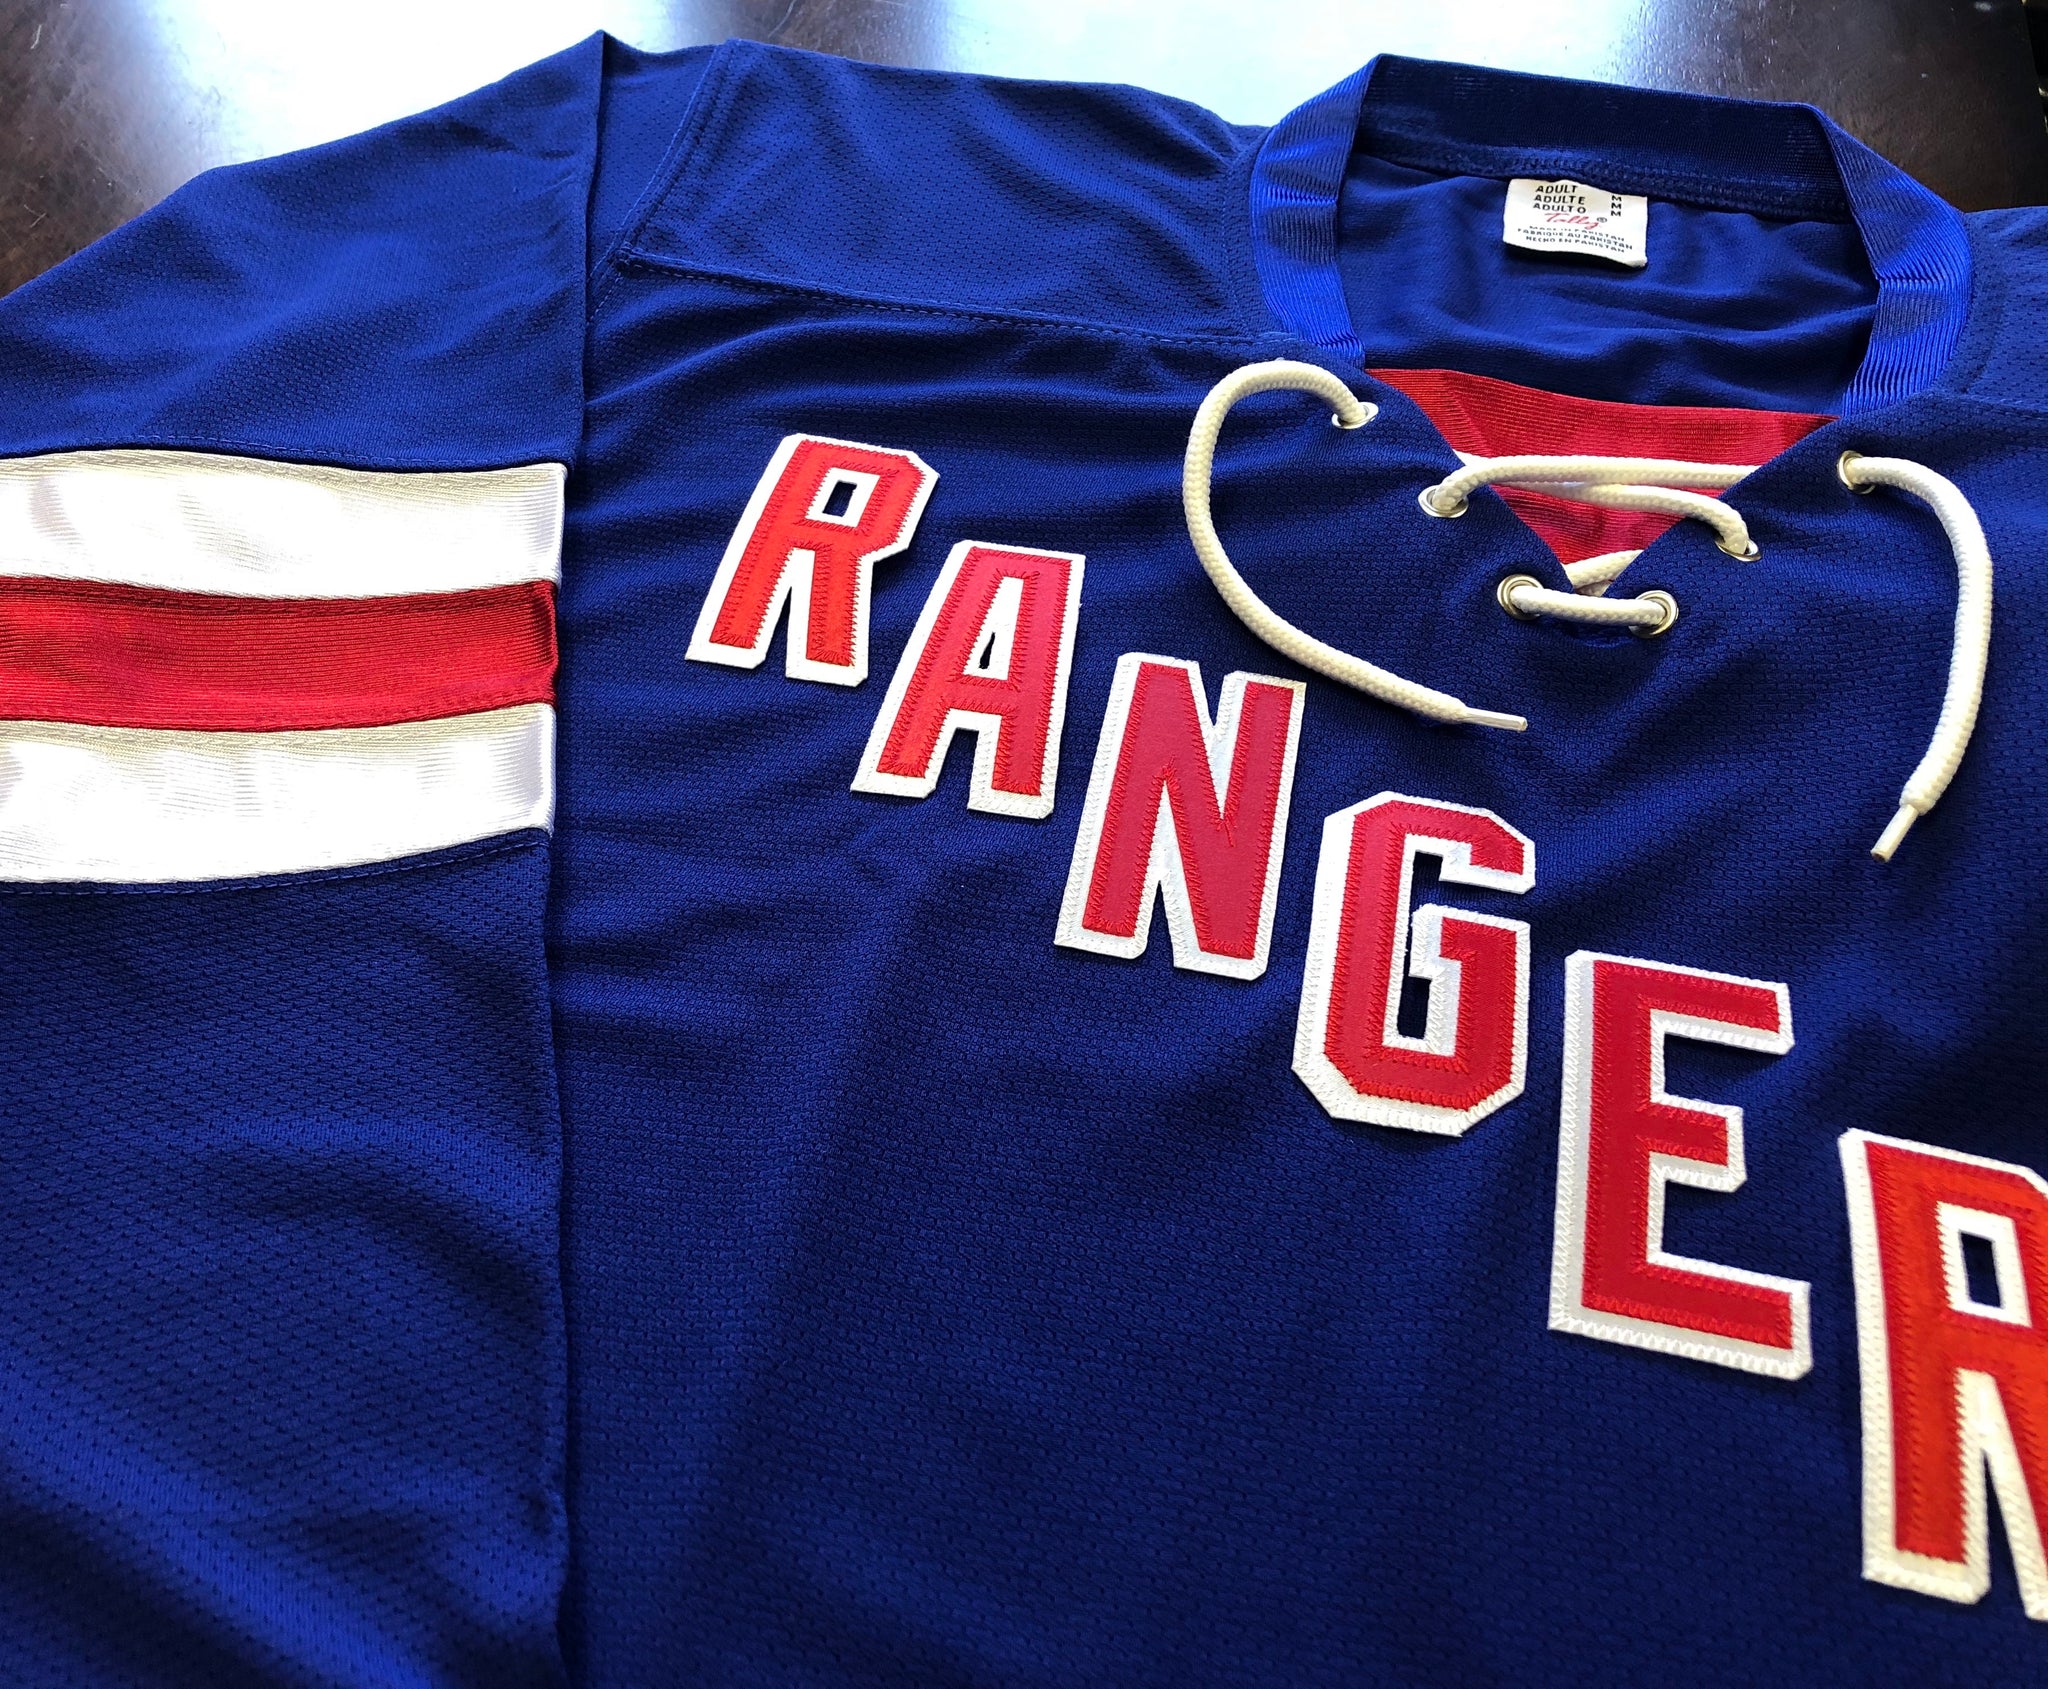 Custom Hockey Jerseys with Rangers in Twill Letters – Tally Hockey